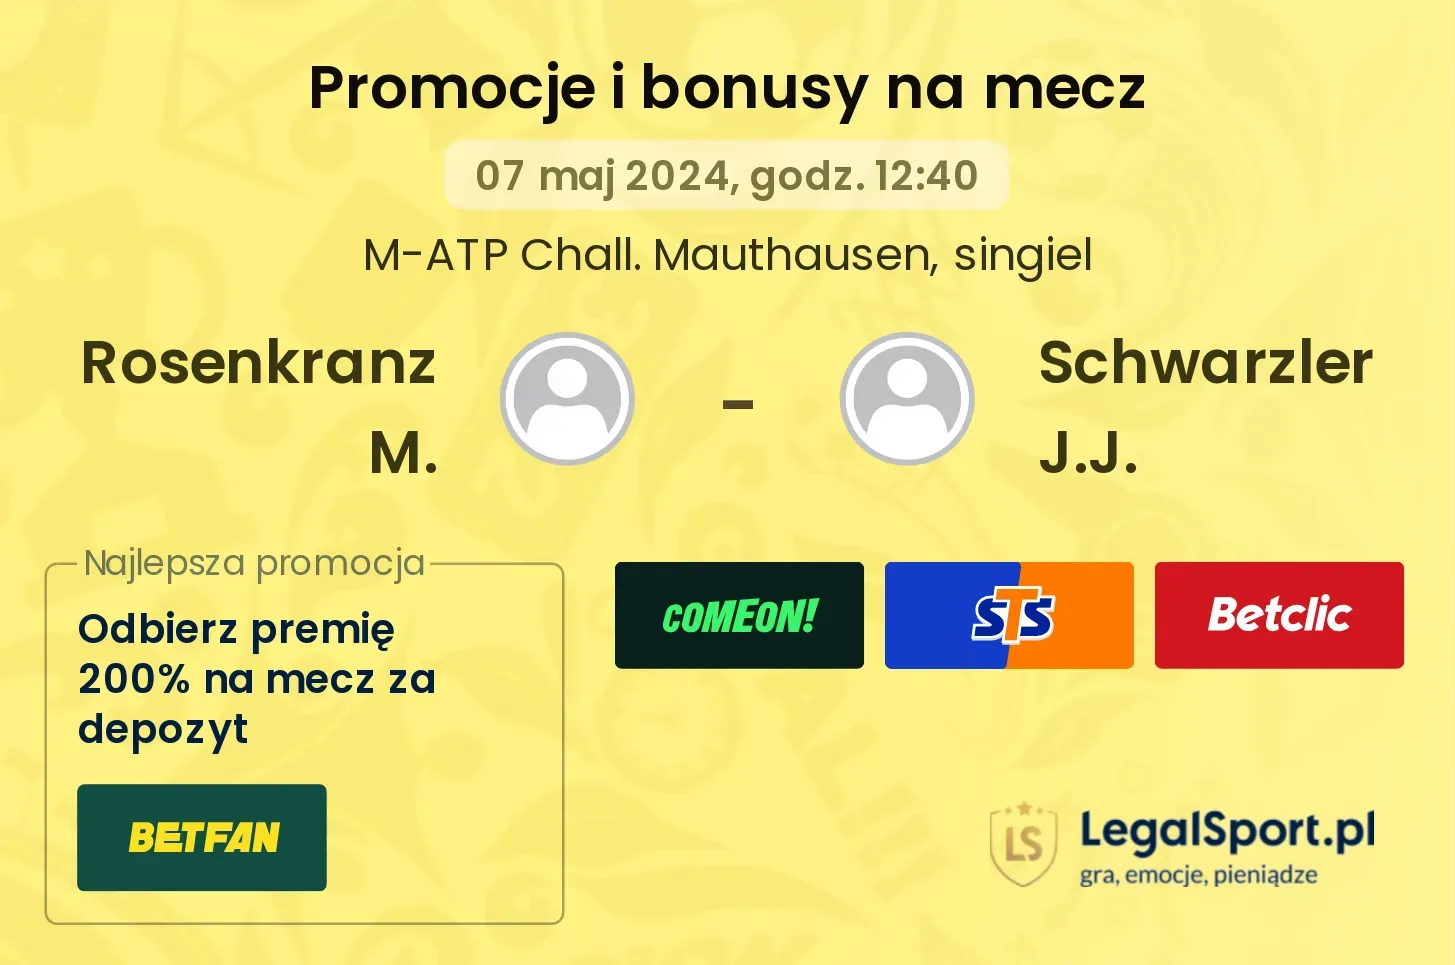 Rosenkranz M. - Schwarzler J.J. promocje bonusy na mecz